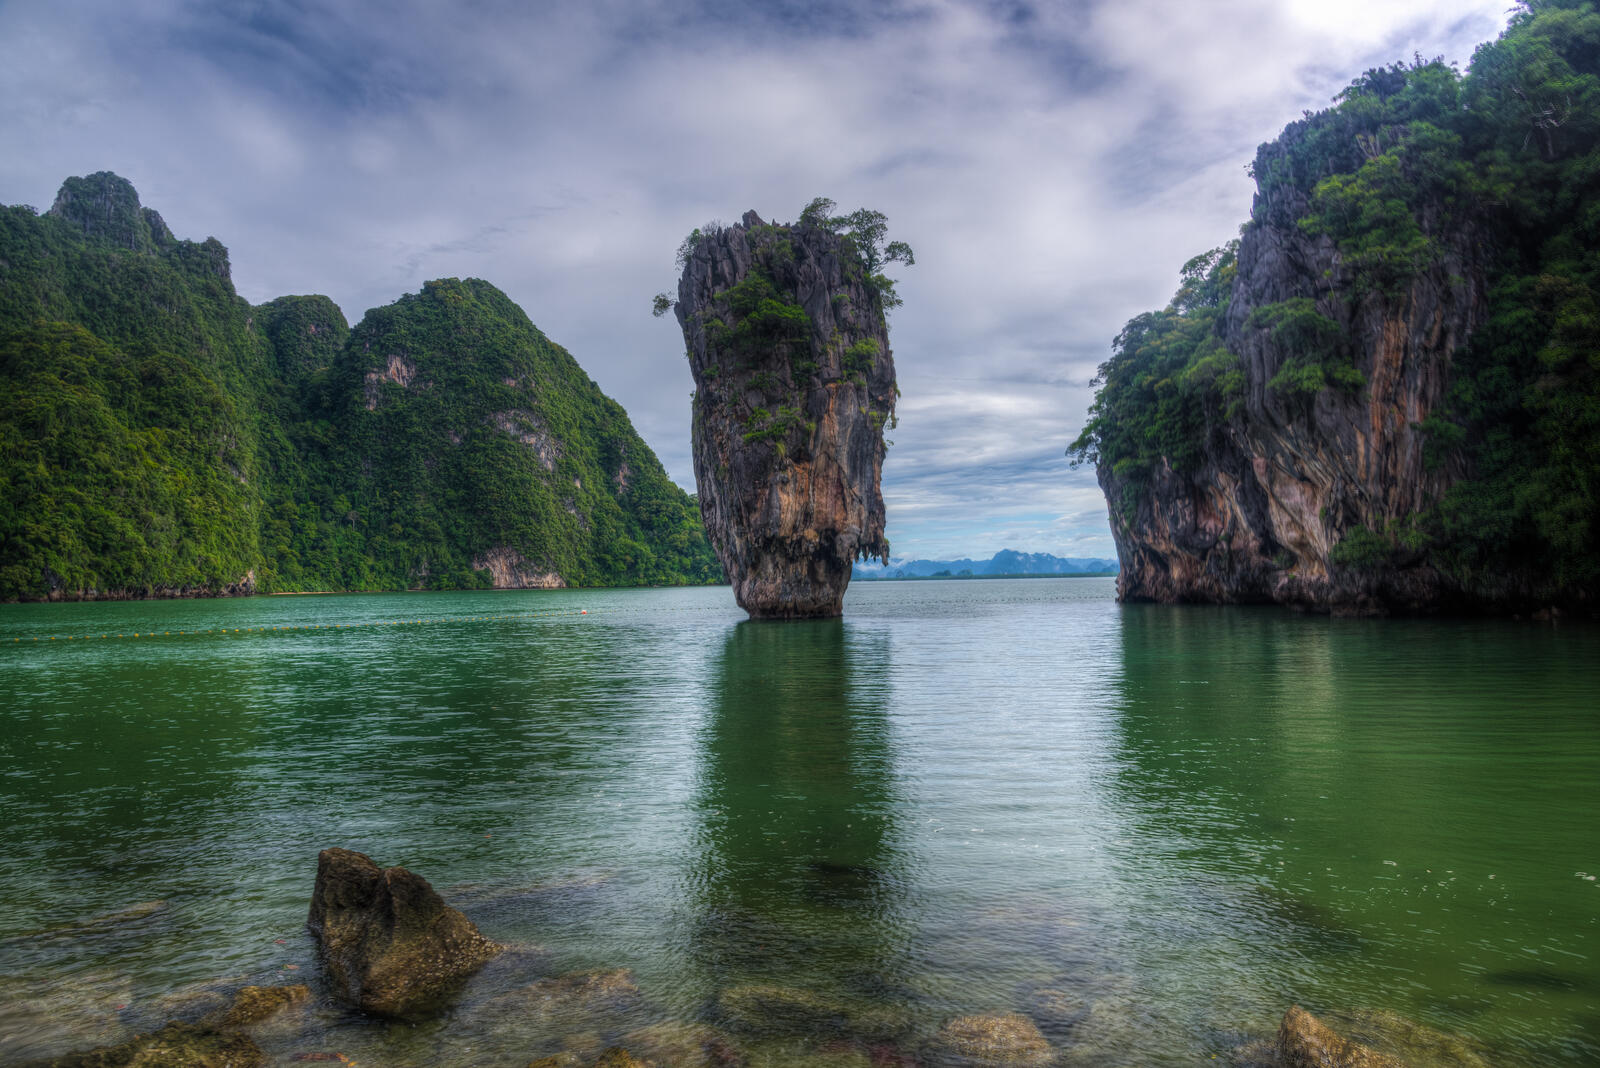 Бесплатное фото Красивые картинки таиланд, остров джеймса бонда бесплатно